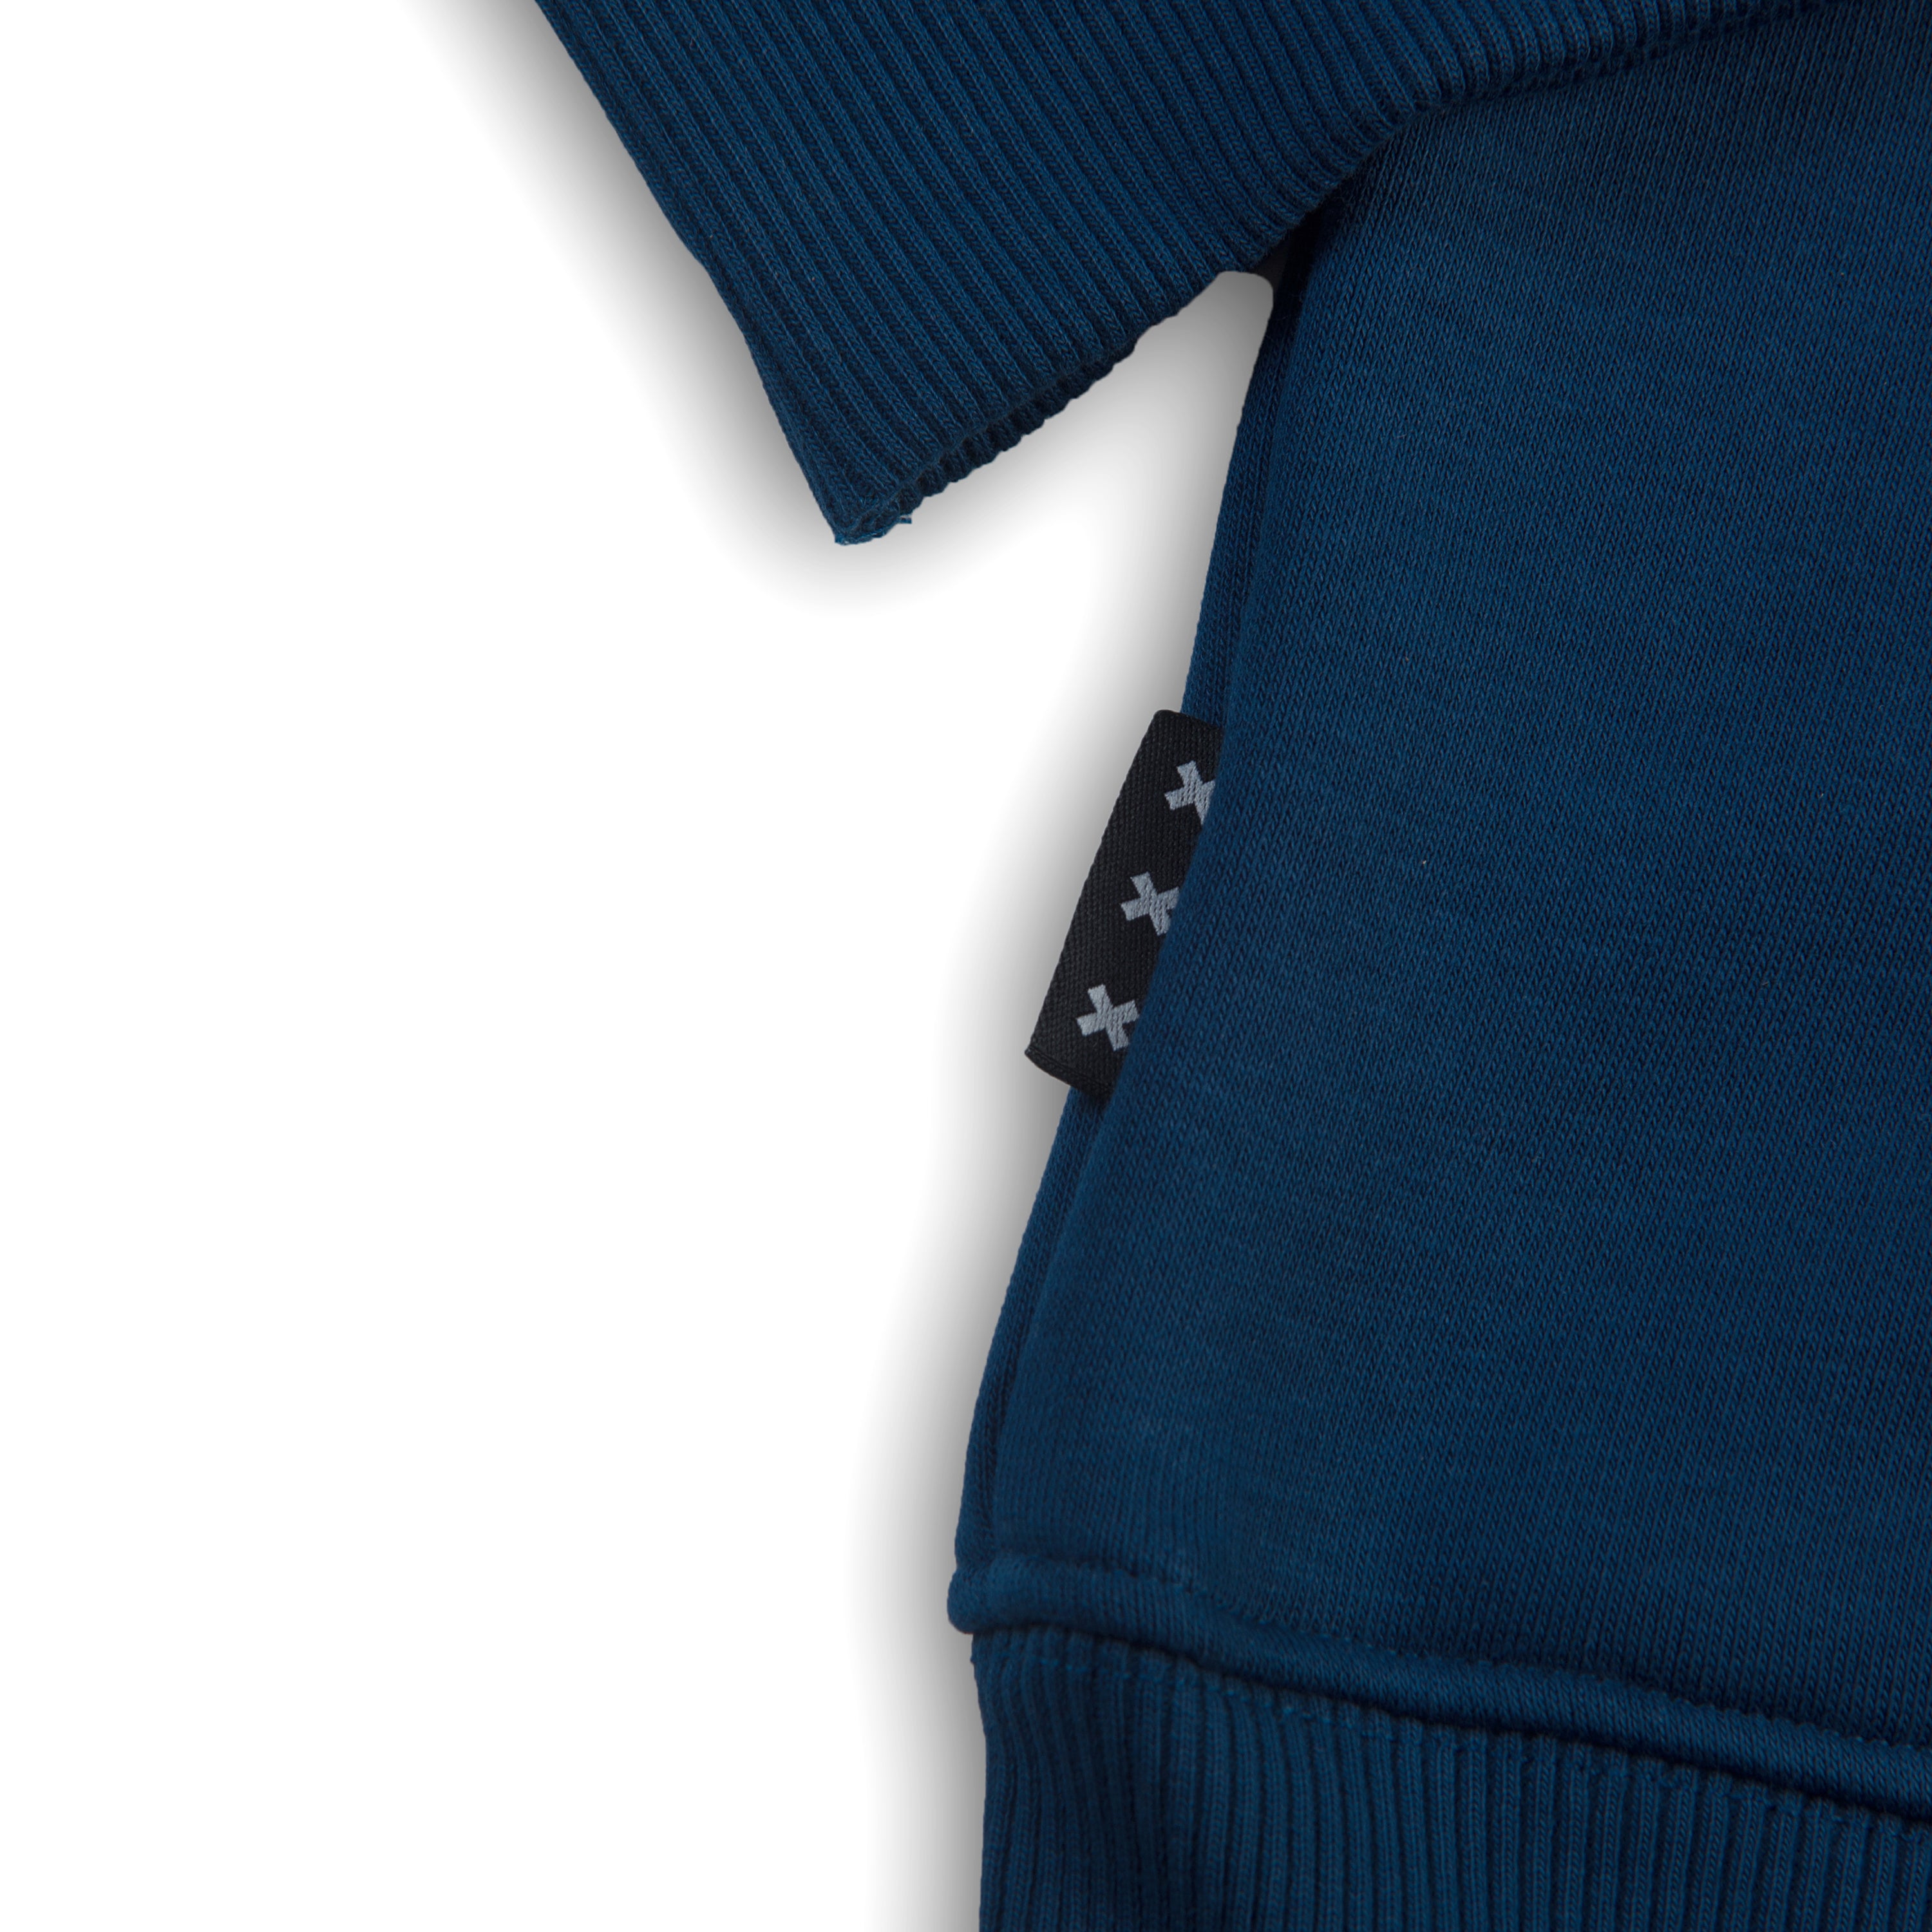 AFCA Sweater Blue Classic